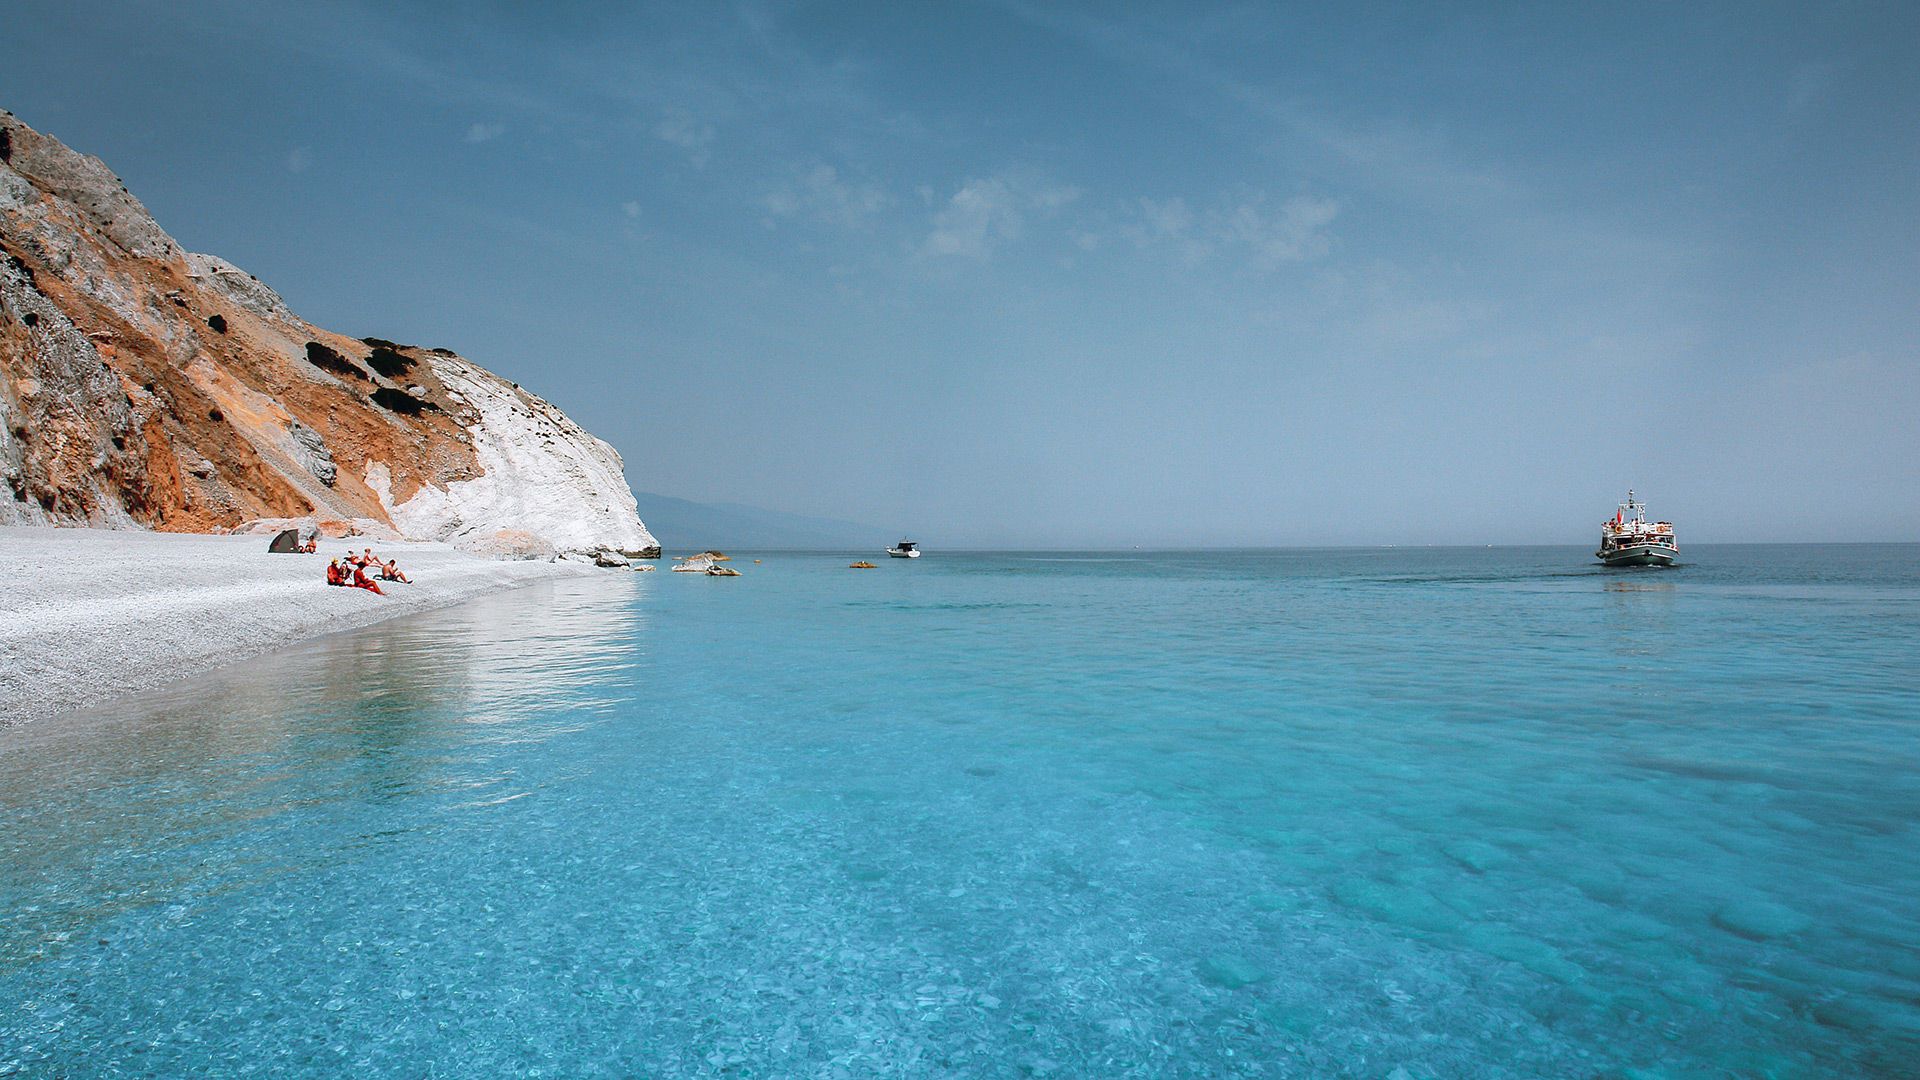 Διάσημη σε όλο τον κόσμο - Αυτή είναι η εντυπωσιακή ελληνική παραλία με τα κρυστάλλινα νερά (pics)